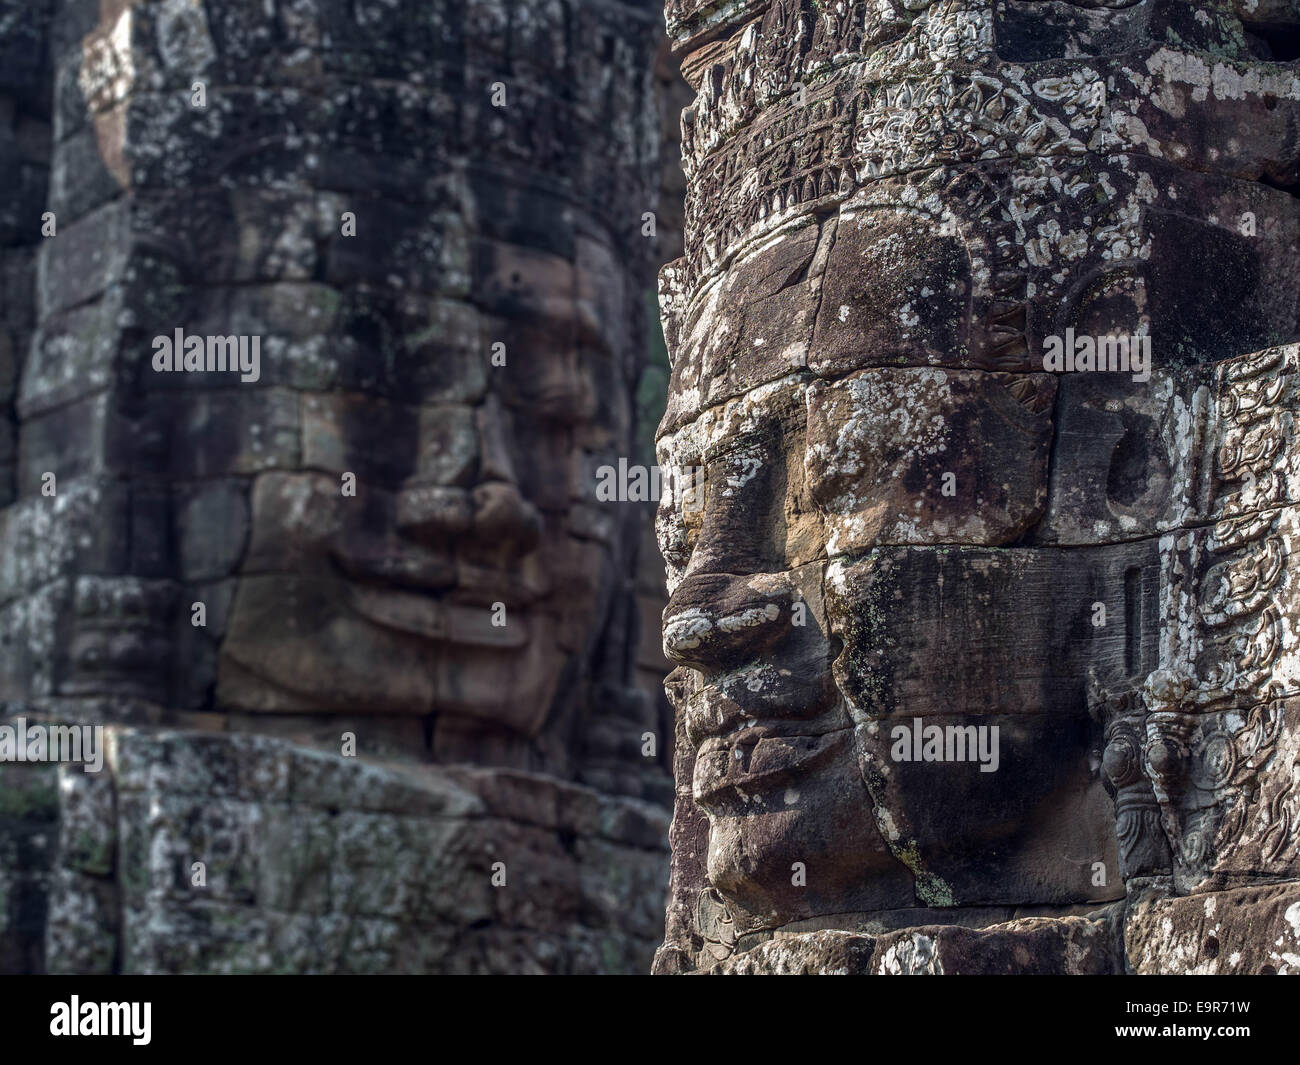 Giant stone faces at ancient Bayon Temple at Angkor, Siem Reap, Cambodia. Stock Photo